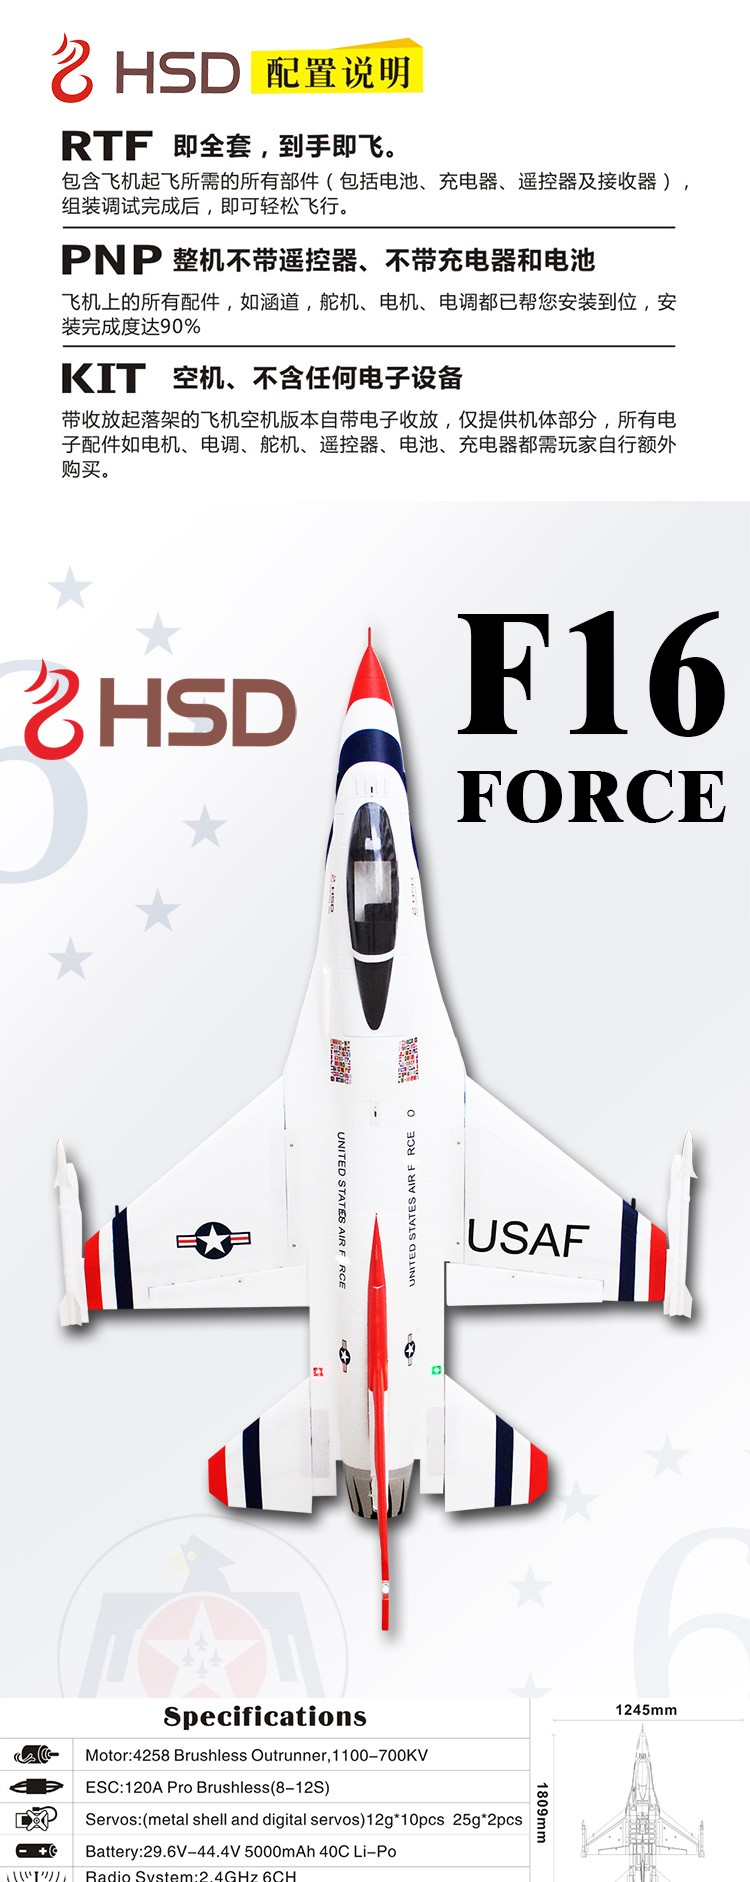 HSD F16 006